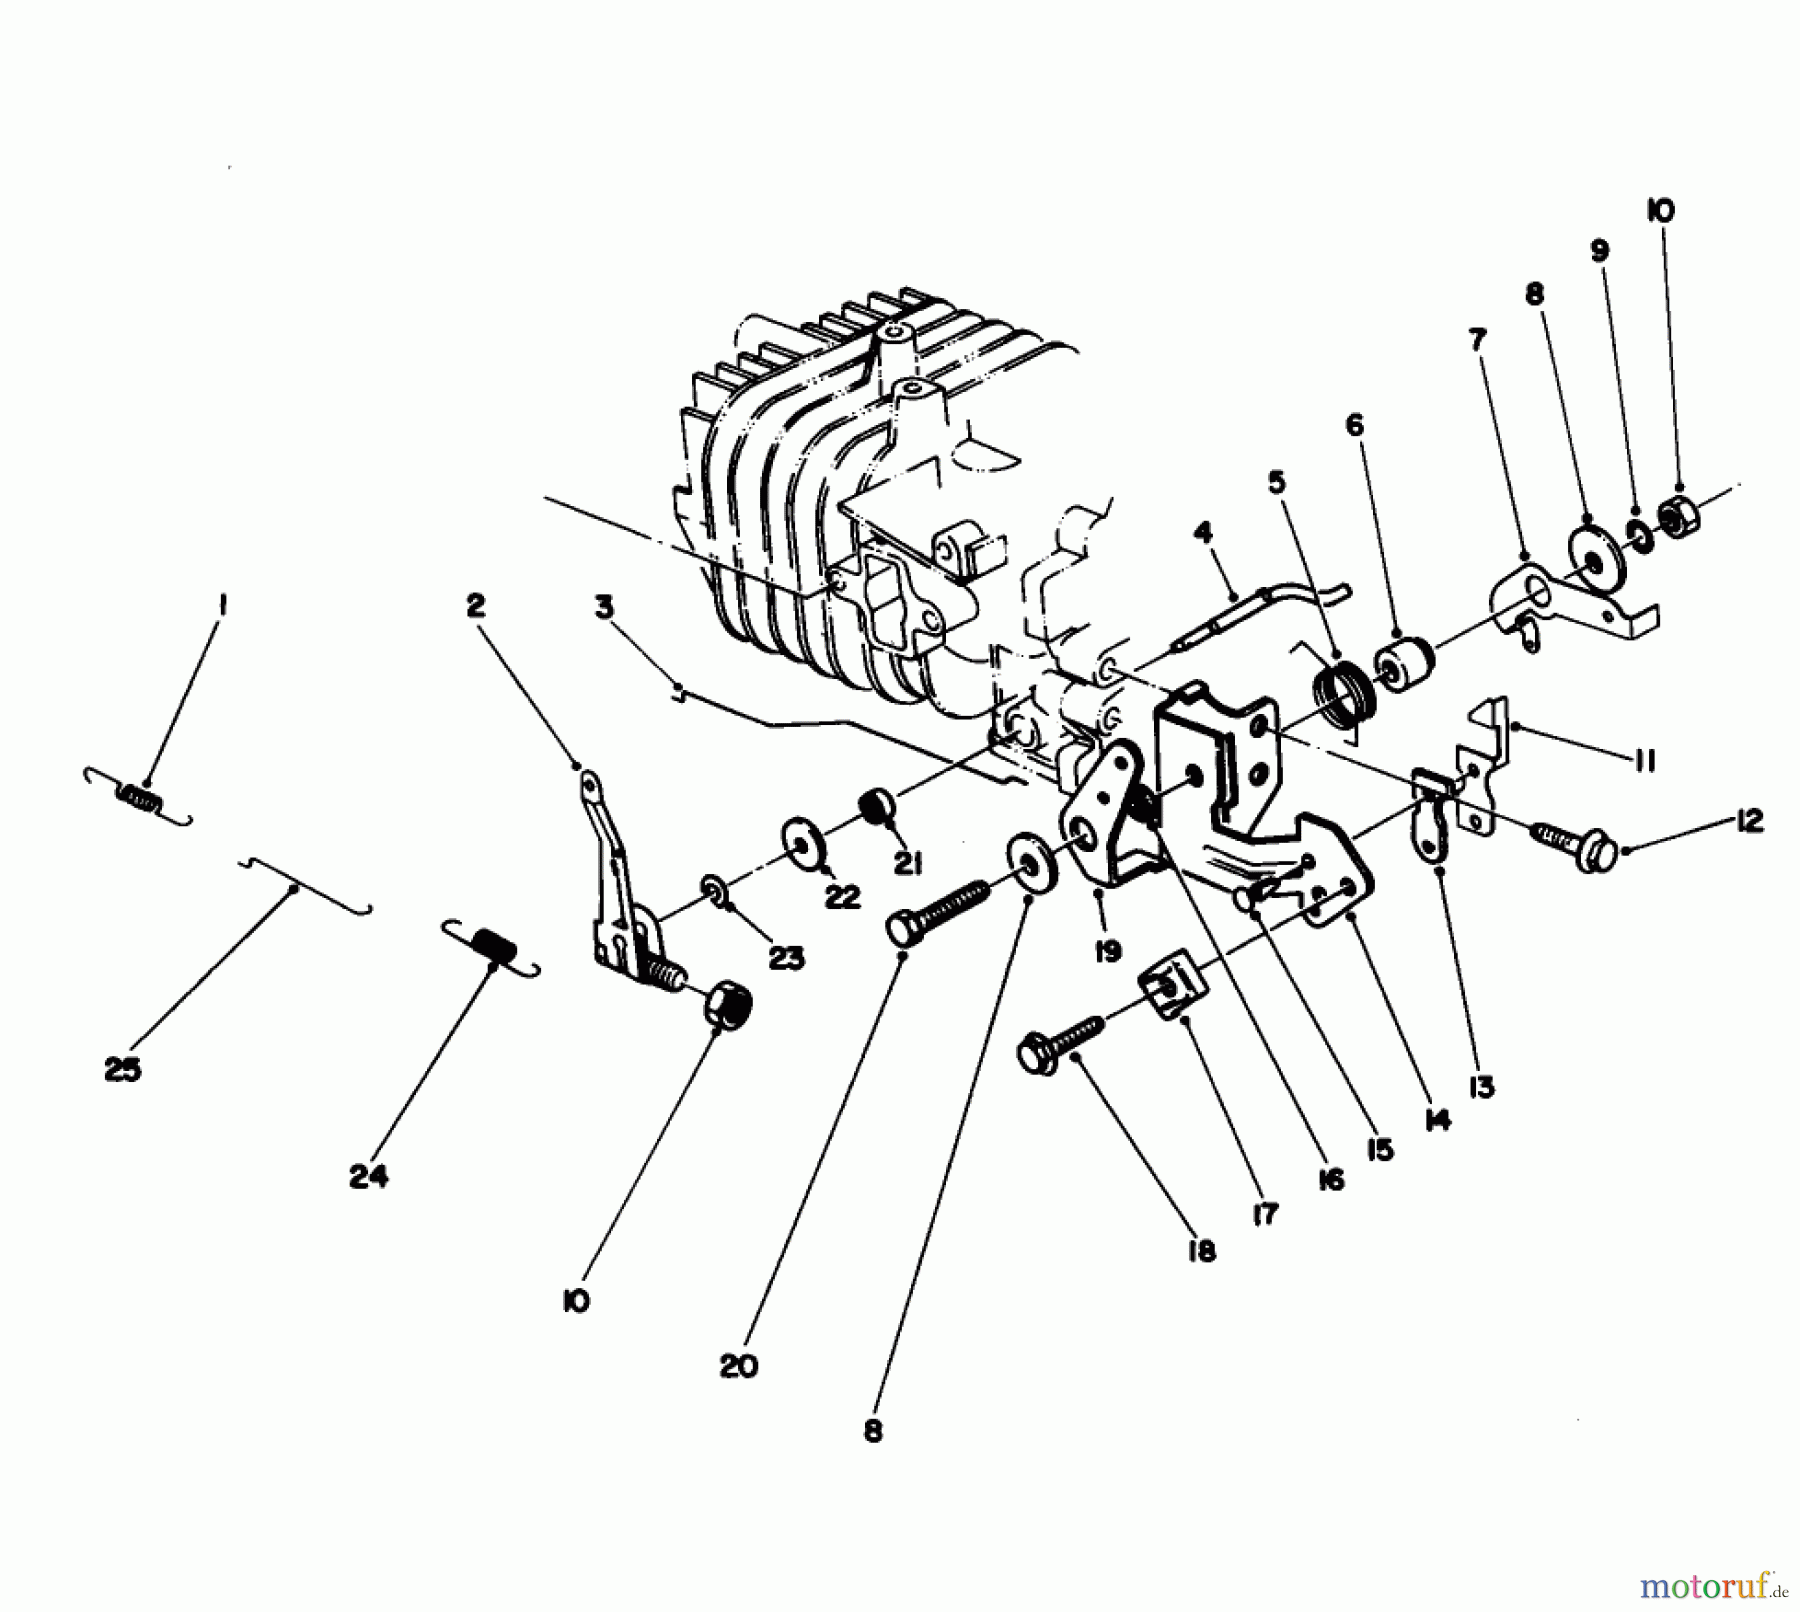  Toro Neu Mowers, Walk-Behind Seite 1 16785 - Toro Lawnmower, 1988 (8000001-8007011) GOVERNOR ASSEMBLY (MODEL NO. 47PH7)